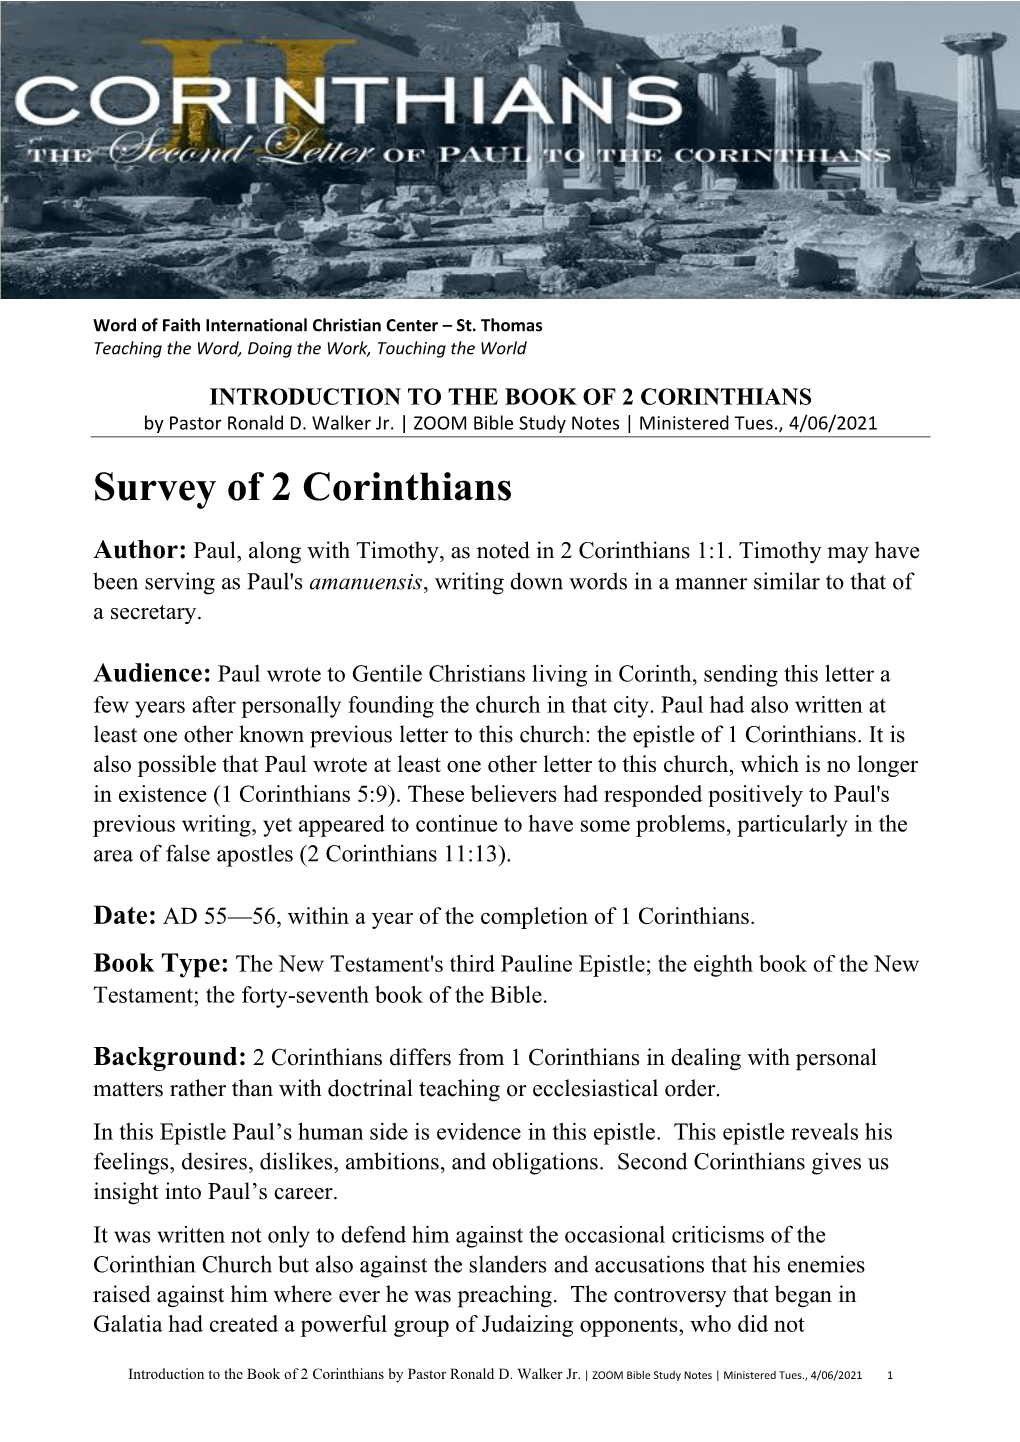 Survey of 2 Corinthians